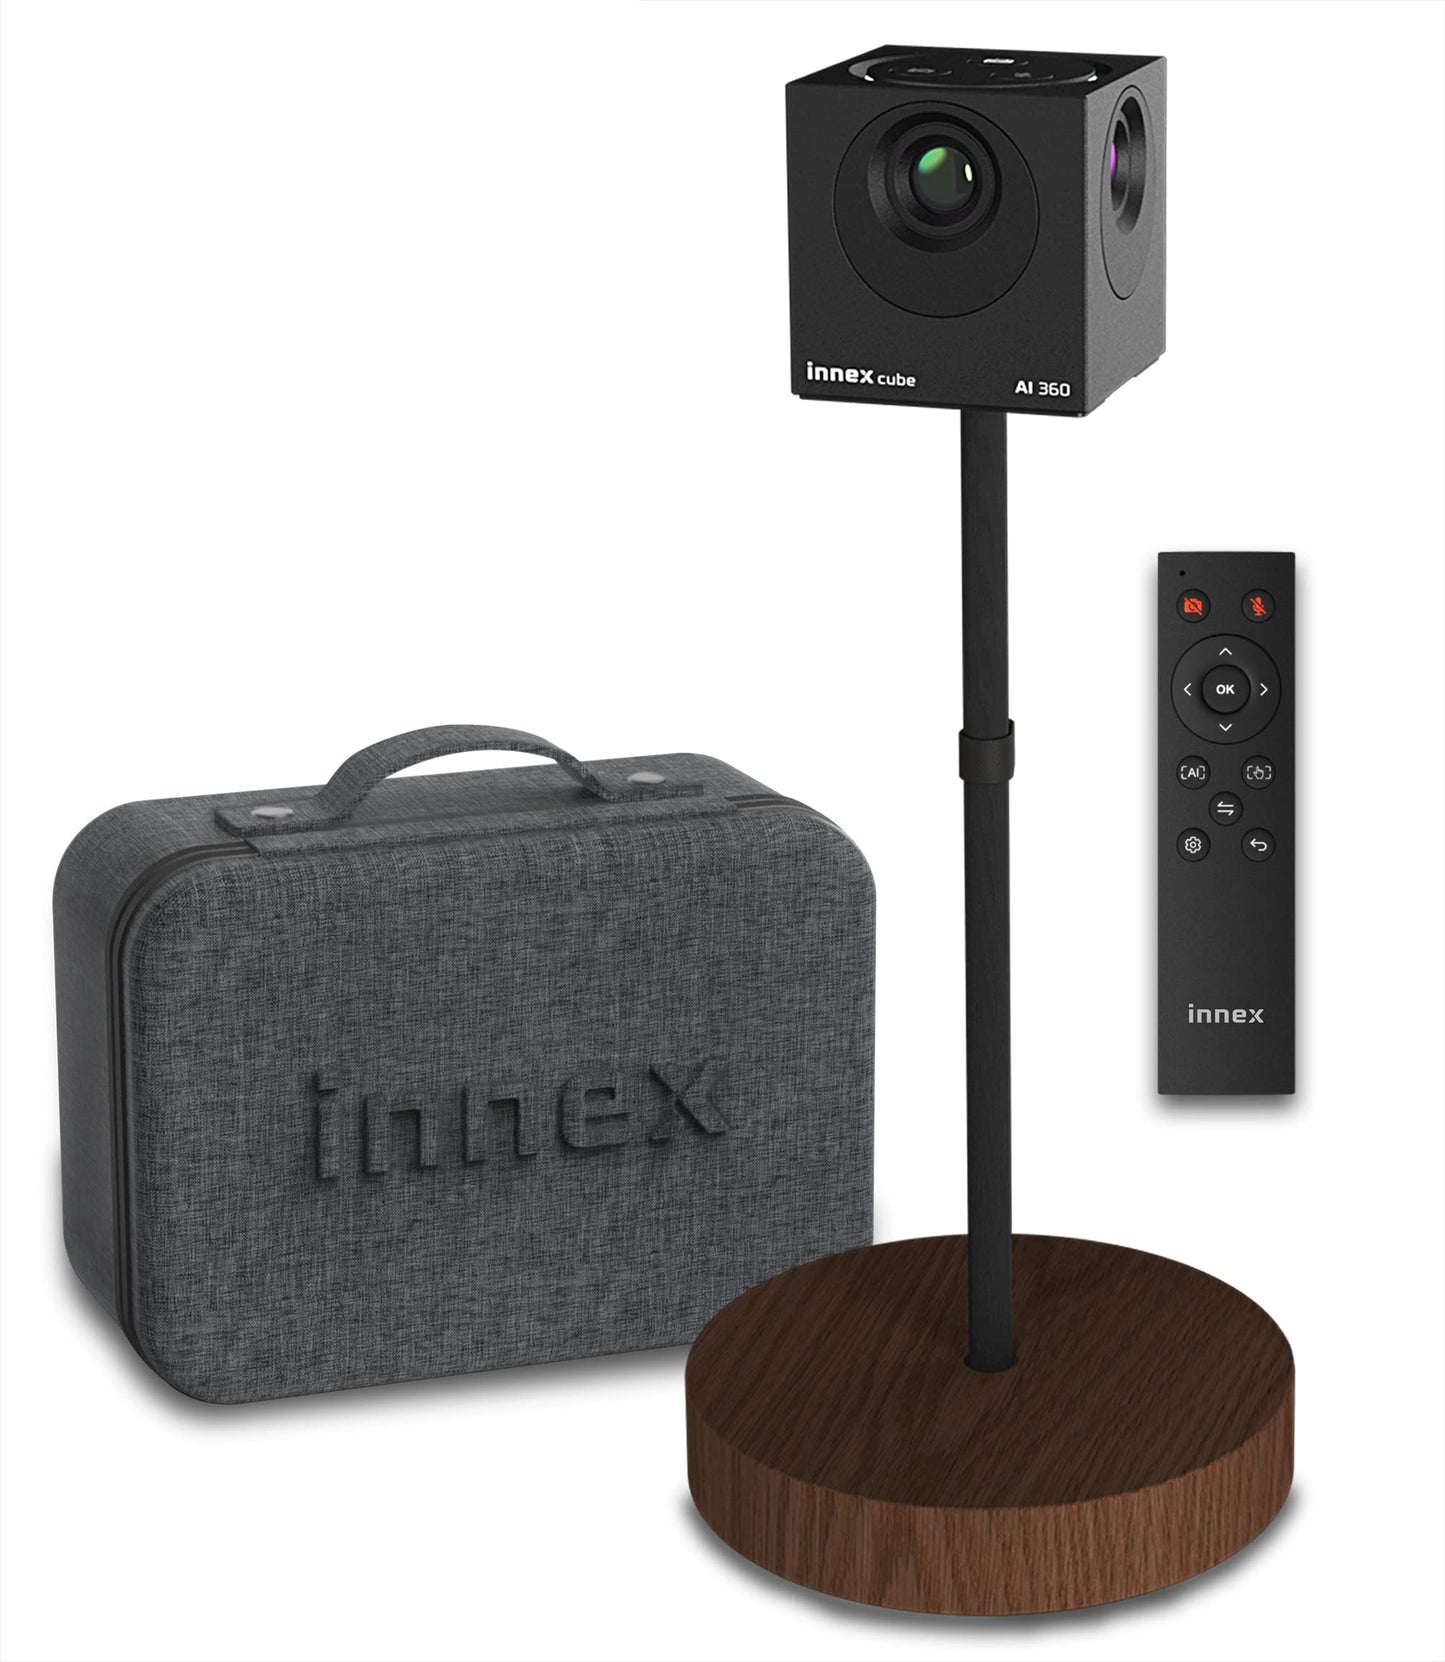 Innex Cube 4K - Cámara de video conferencia panorámica de 360° alimentada por IA, cámara web inteligente con micrófonos duales